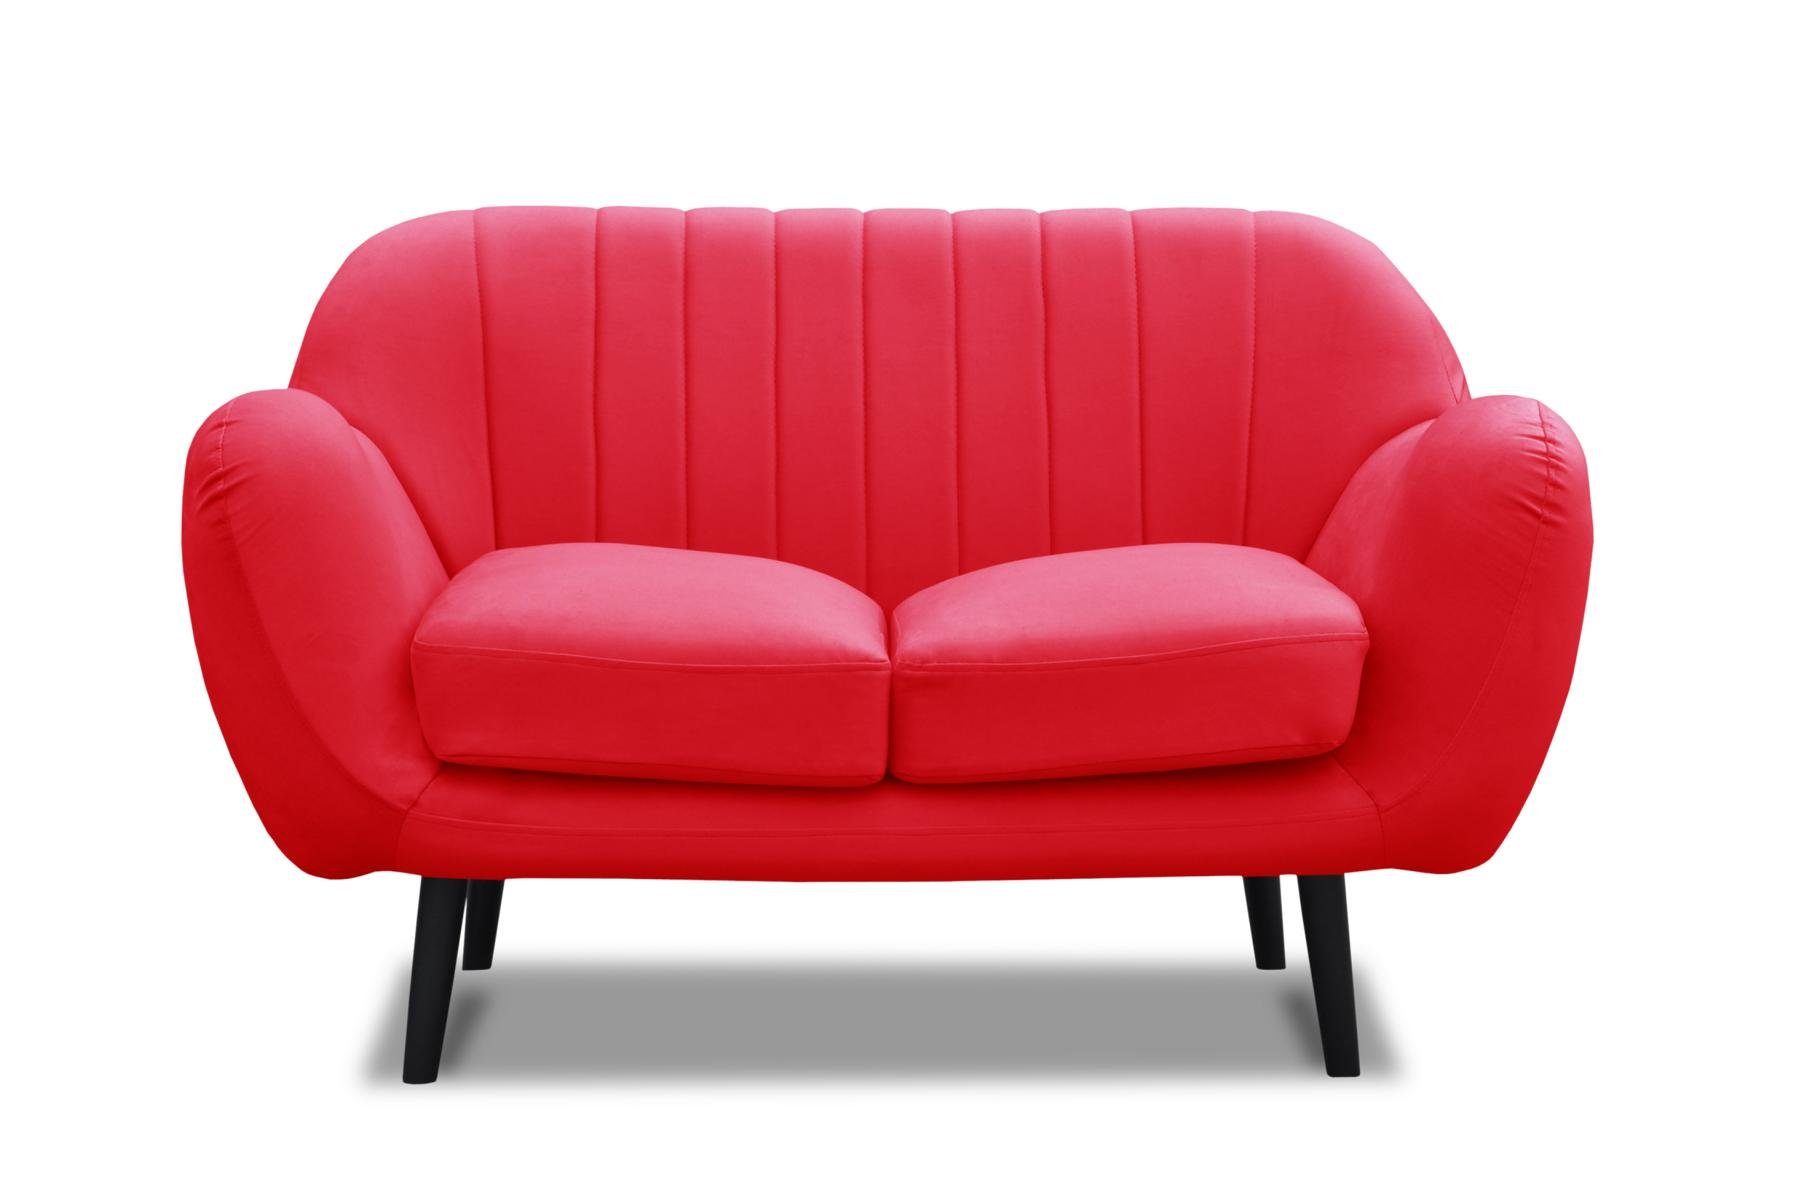 JVmoebel Sofa Moderne Zweisitzer Stoff Leder Zweisitzer Neu Couch, Made in Europe